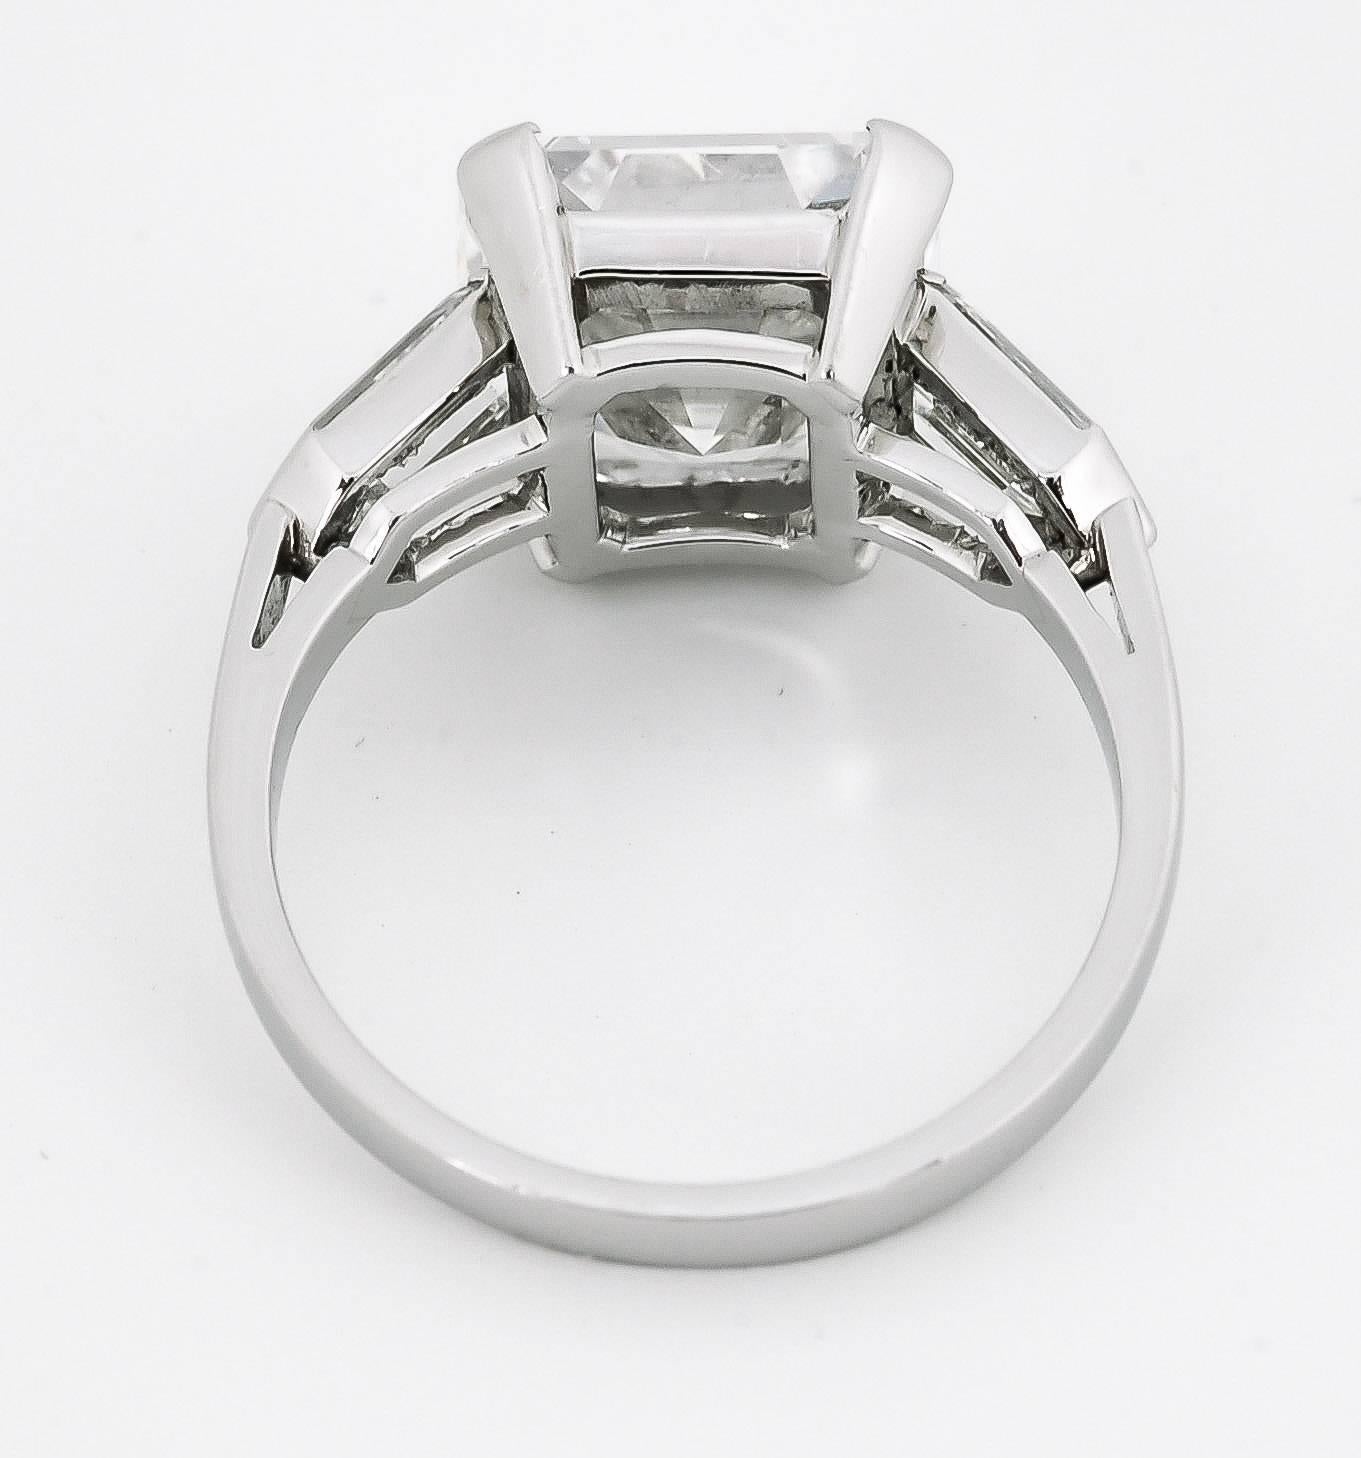 4 carat asscher cut diamond ring price